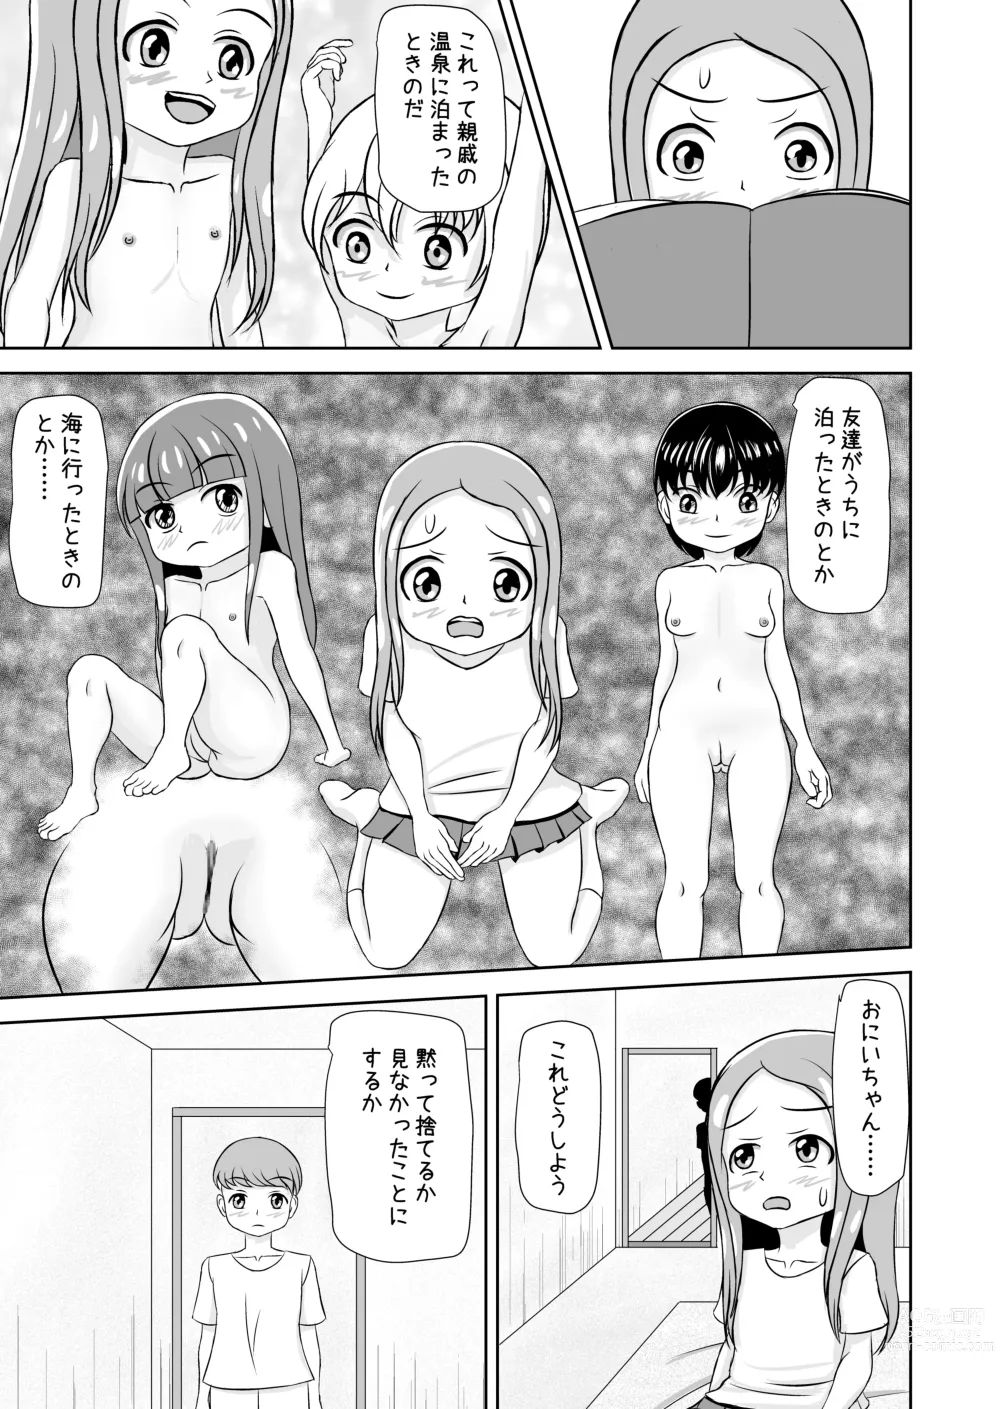 Page 7 of doujinshi Watashi to Dare no Ko?